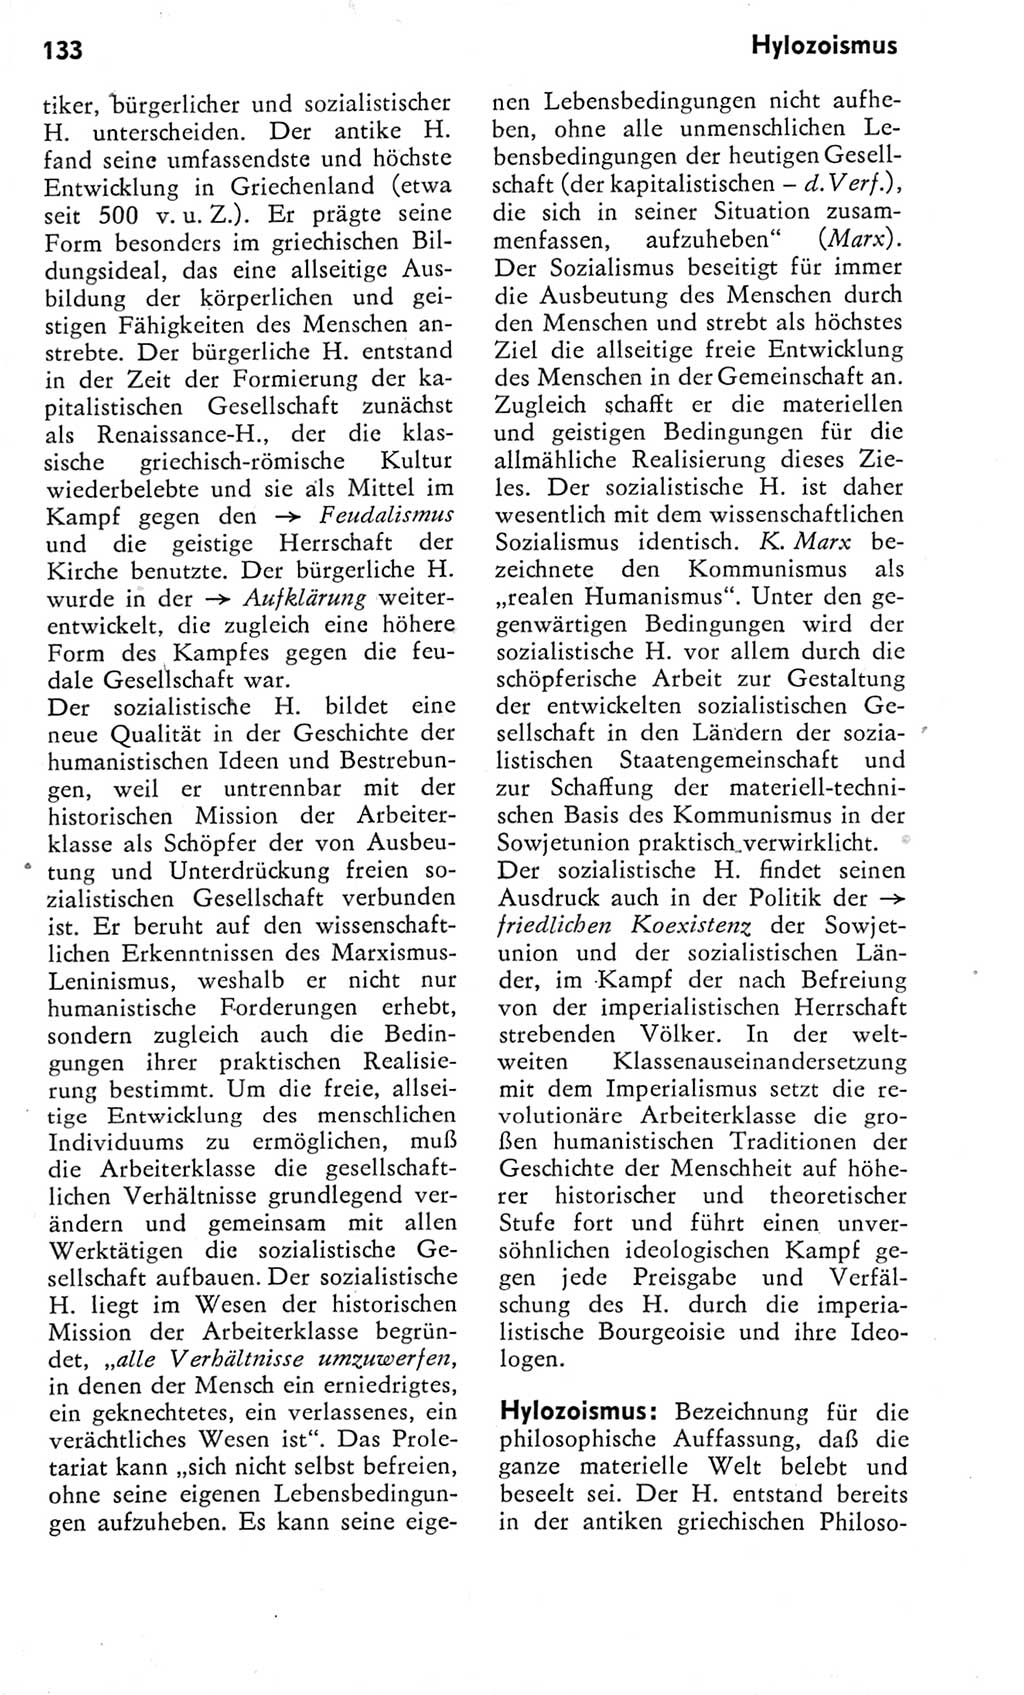 Kleines Wörterbuch der marxistisch-leninistischen Philosophie [Deutsche Demokratische Republik (DDR)] 1975, Seite 133 (Kl. Wb. ML Phil. DDR 1975, S. 133)